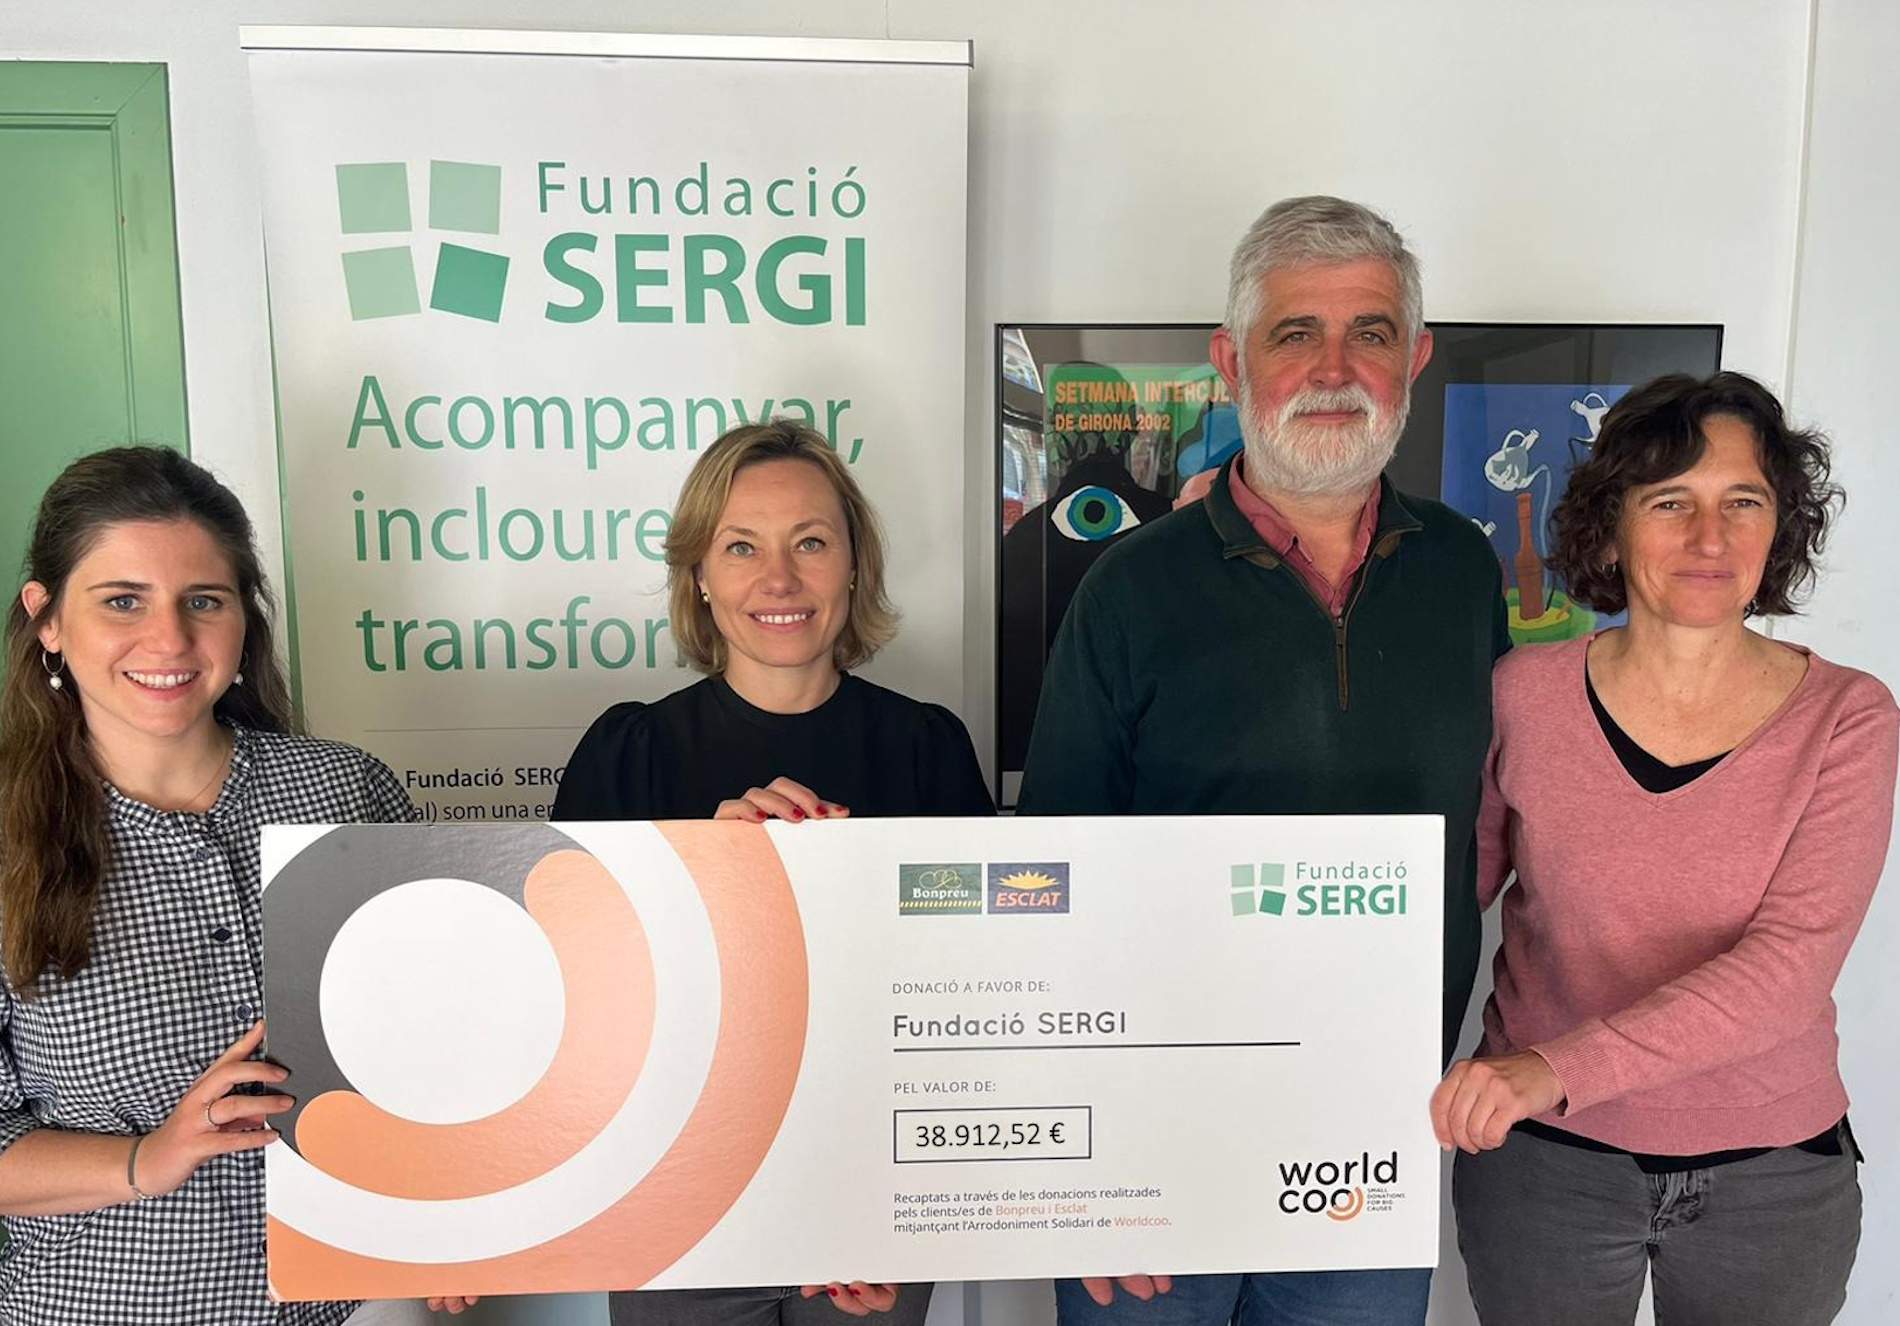 Els clients de Bonpreu i Esclat donen 38.912 euros a la Fundació SERGI